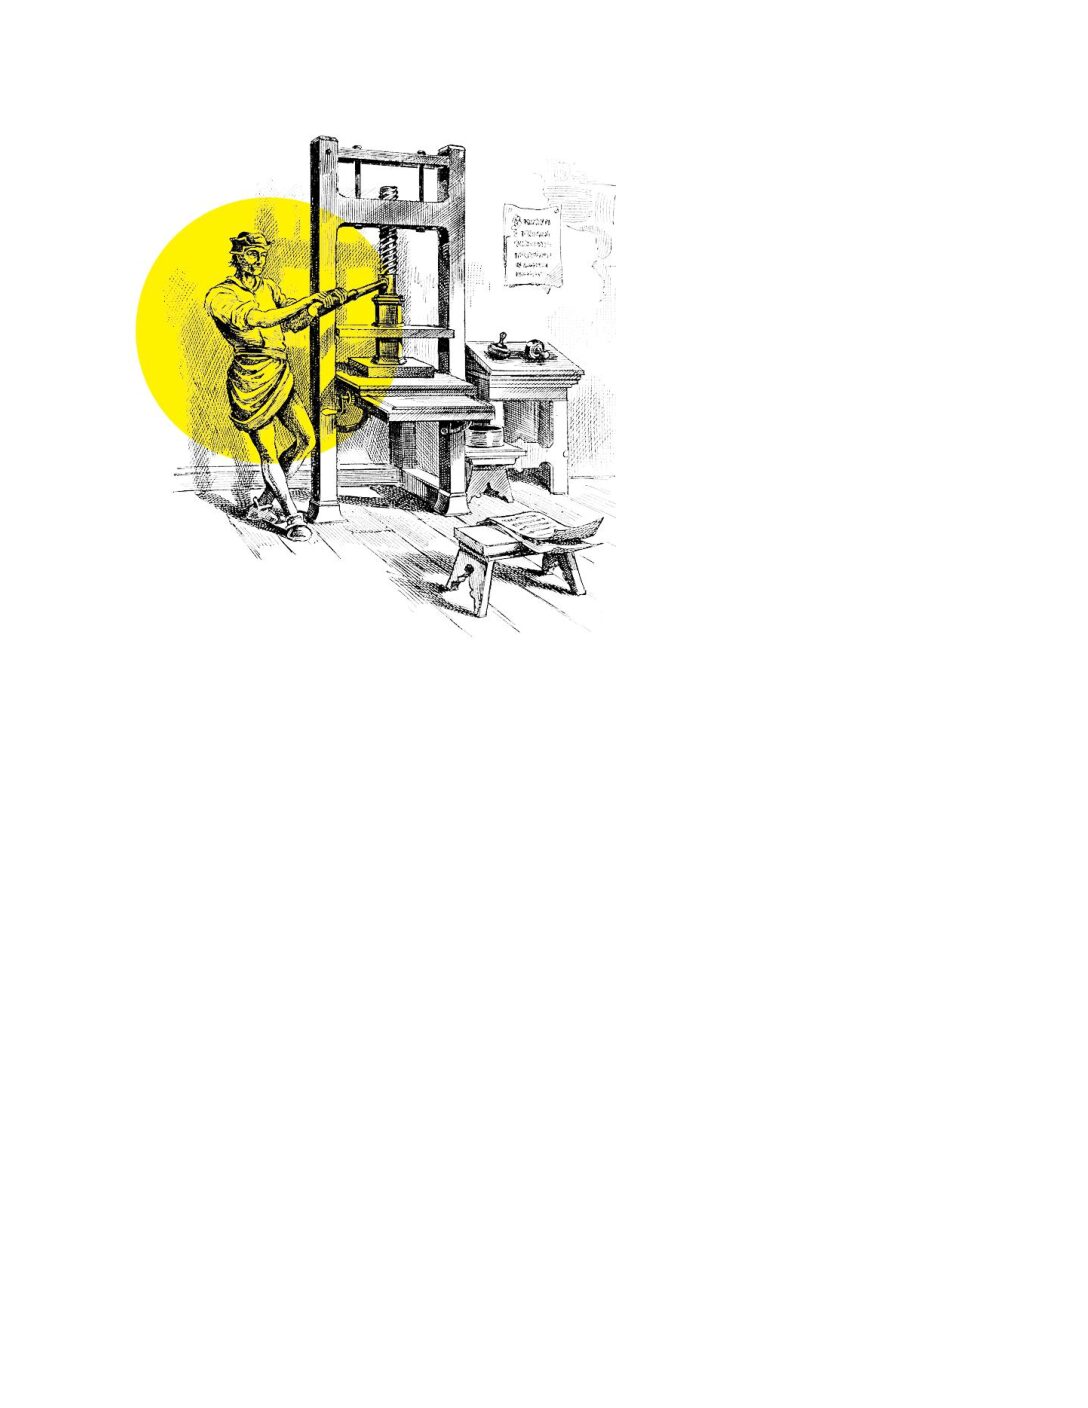 Drawing of a man operating a manual printing press